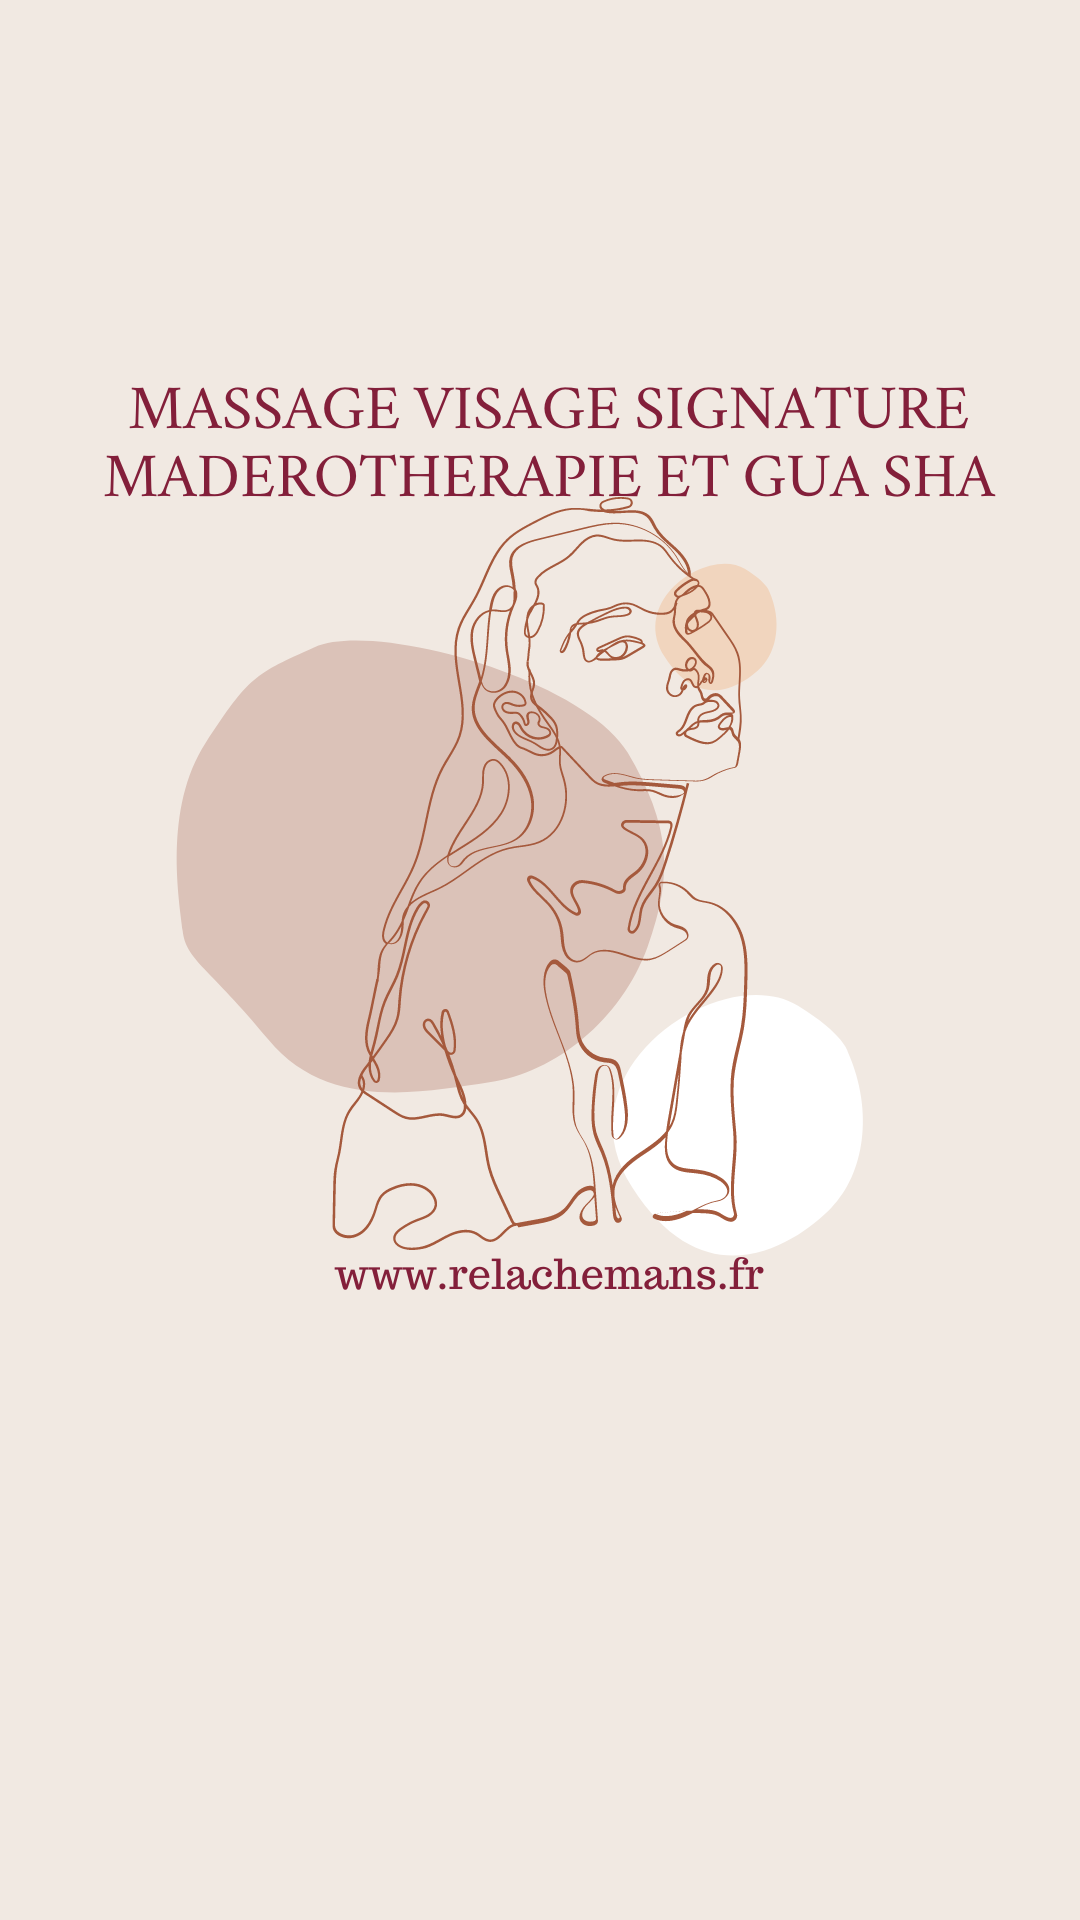 Massage visage madérothérapie et gua sha Le Mans